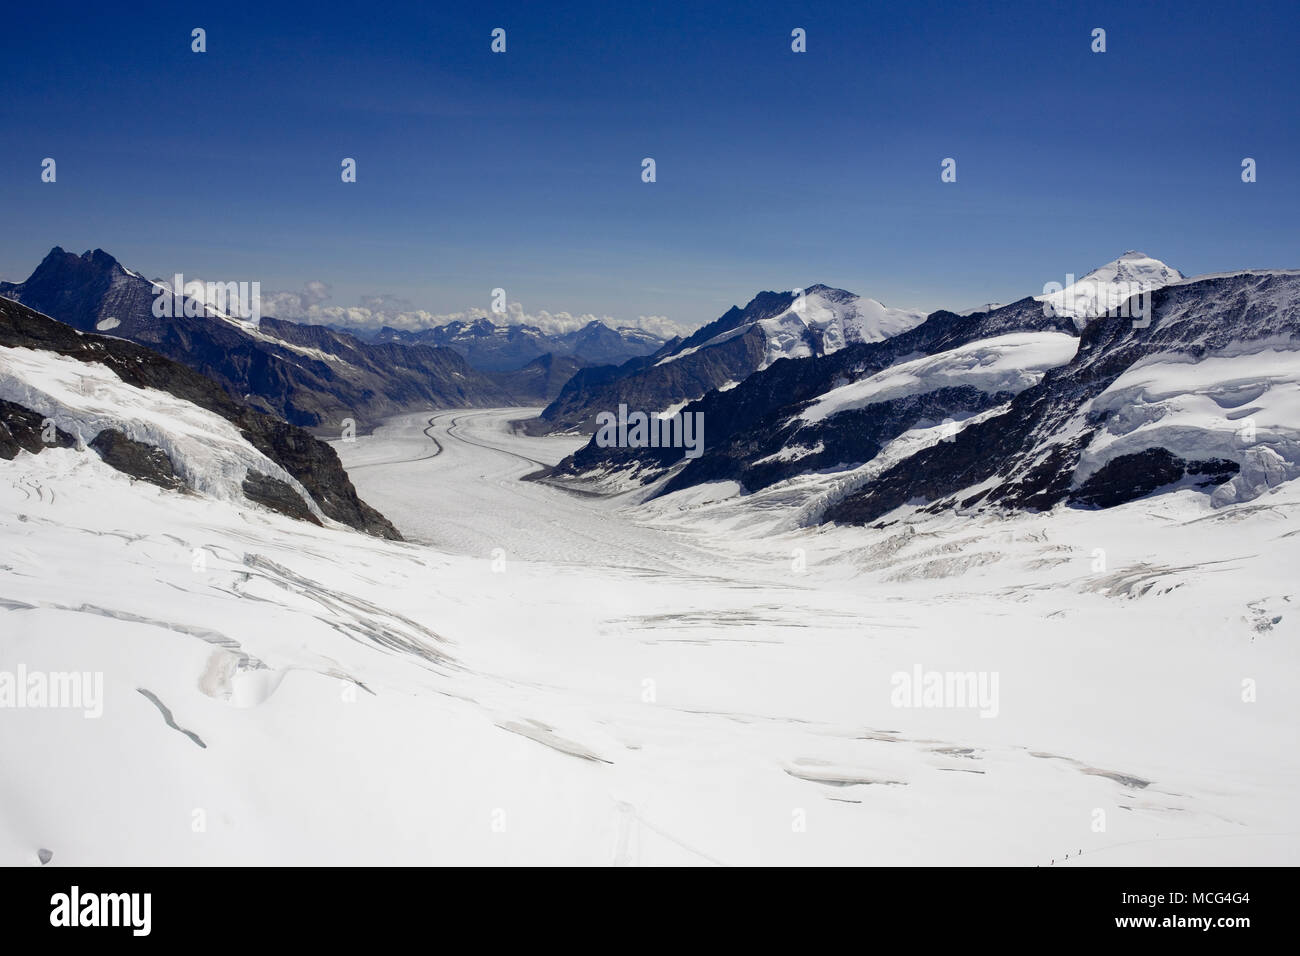 Il Ghiacciaio Jungfraufirn, portando a Konkordiaplatz, dove tre ghiacciai unirsi formando il grande ghiacciaio di Aletsch, Oberland bernese, Svizzera Foto Stock